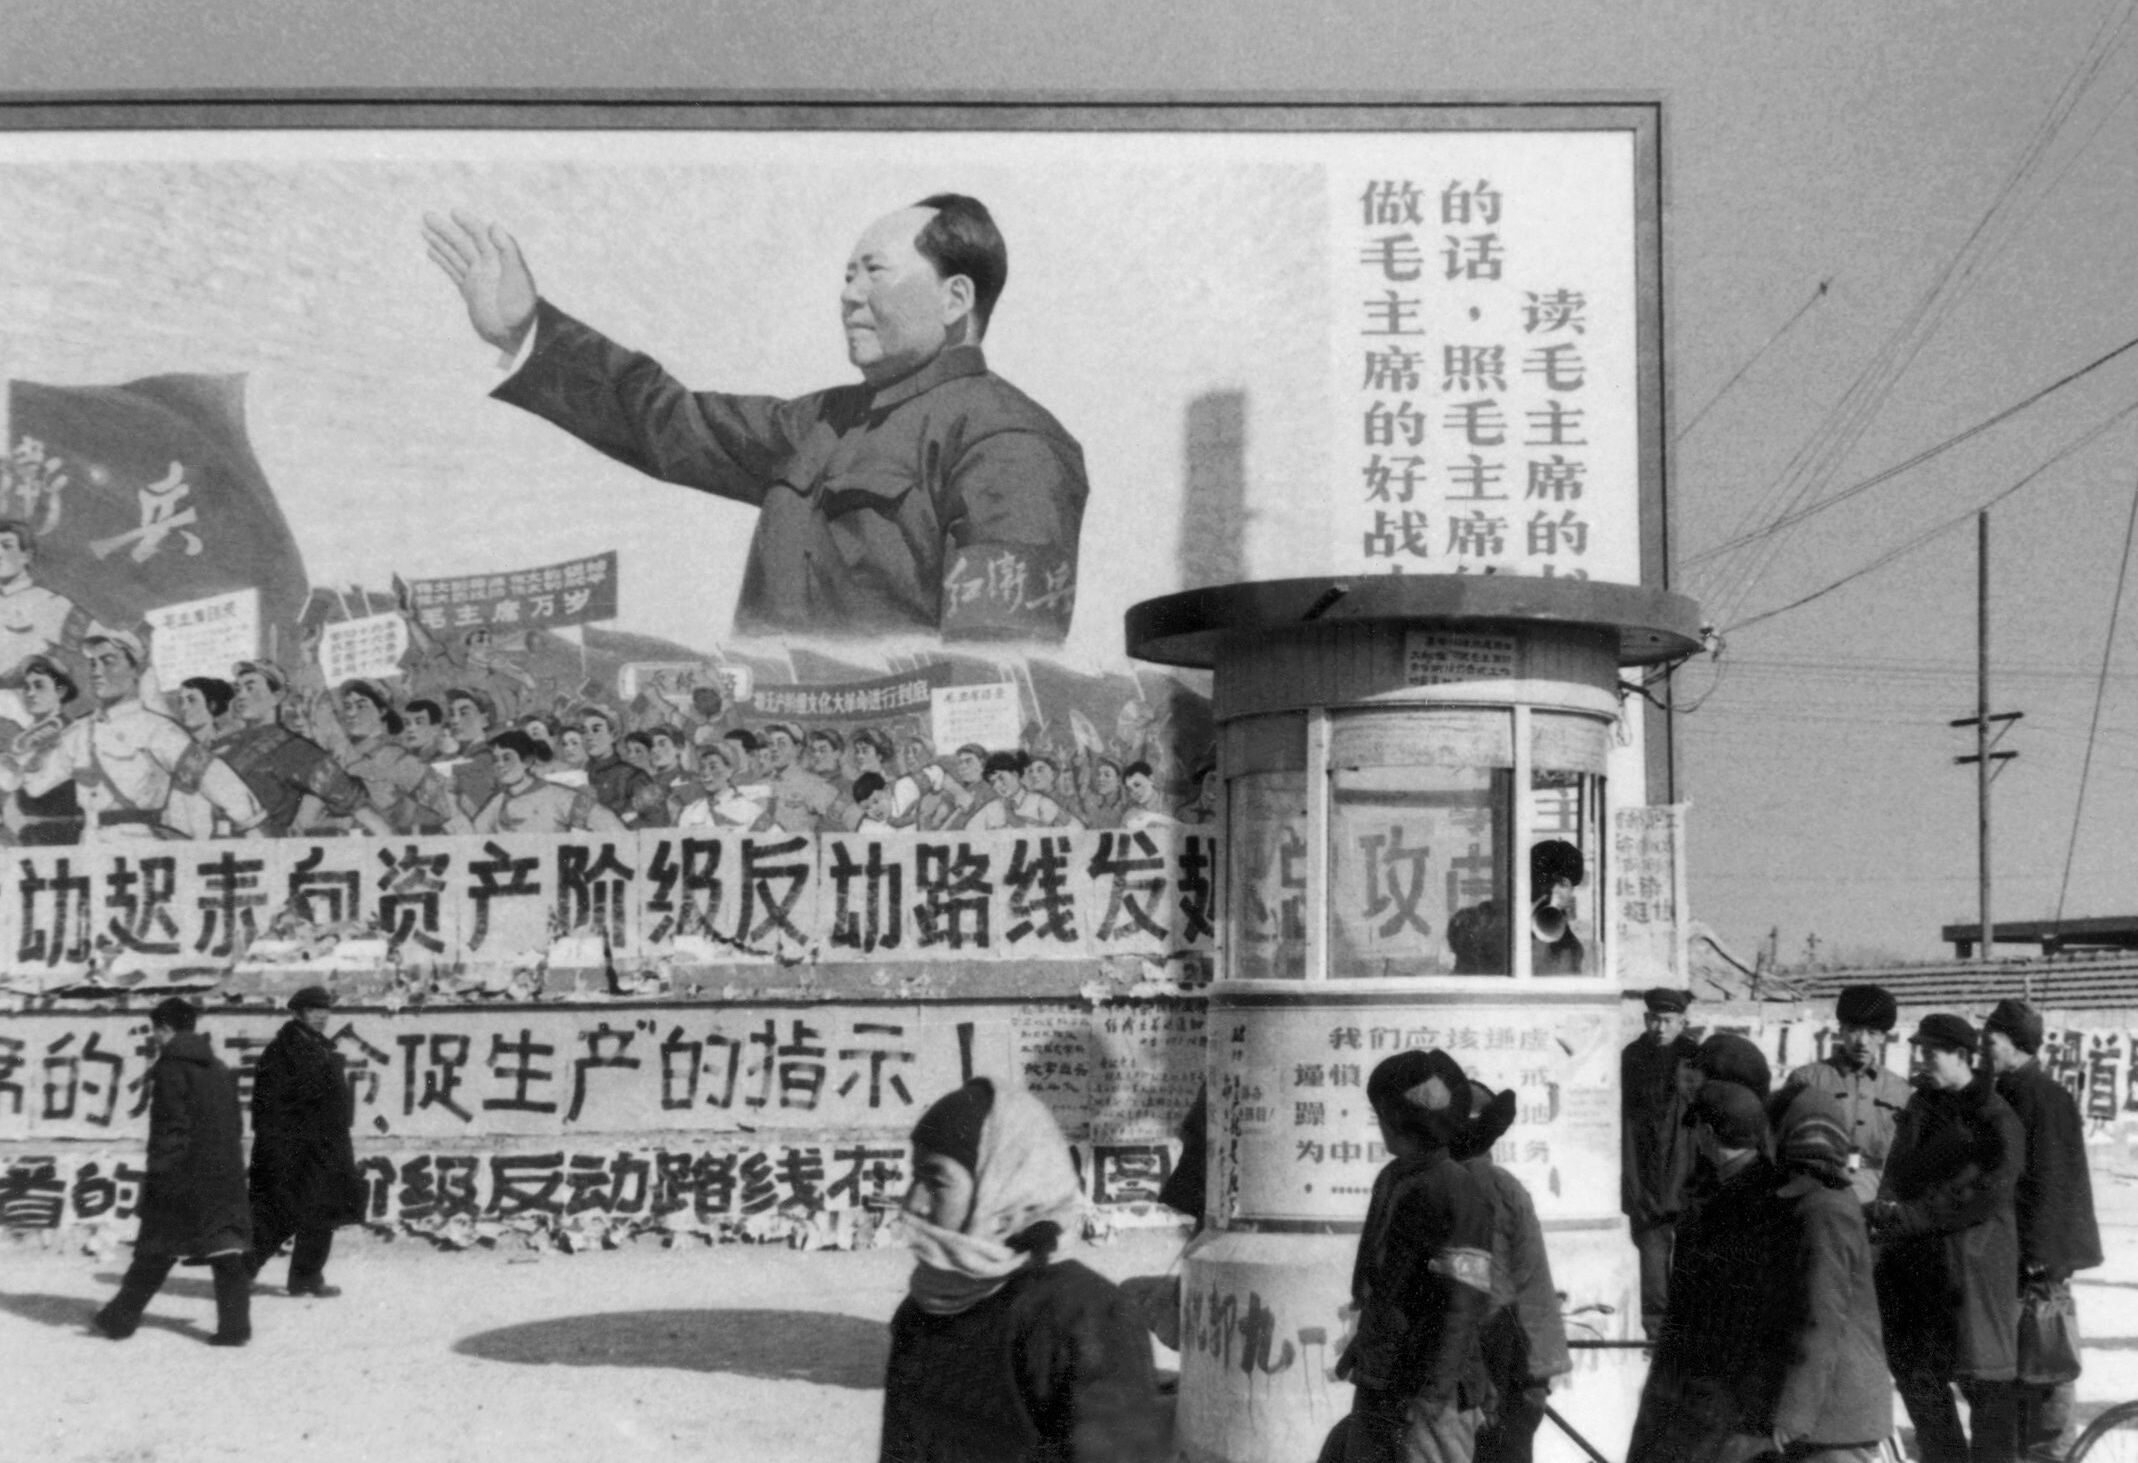 Chuyên gia: Lãnh đạo Trung Quốc ca ngợi Mao Trạch Đông với mưu toan bảo toàn quyền lực chính trị